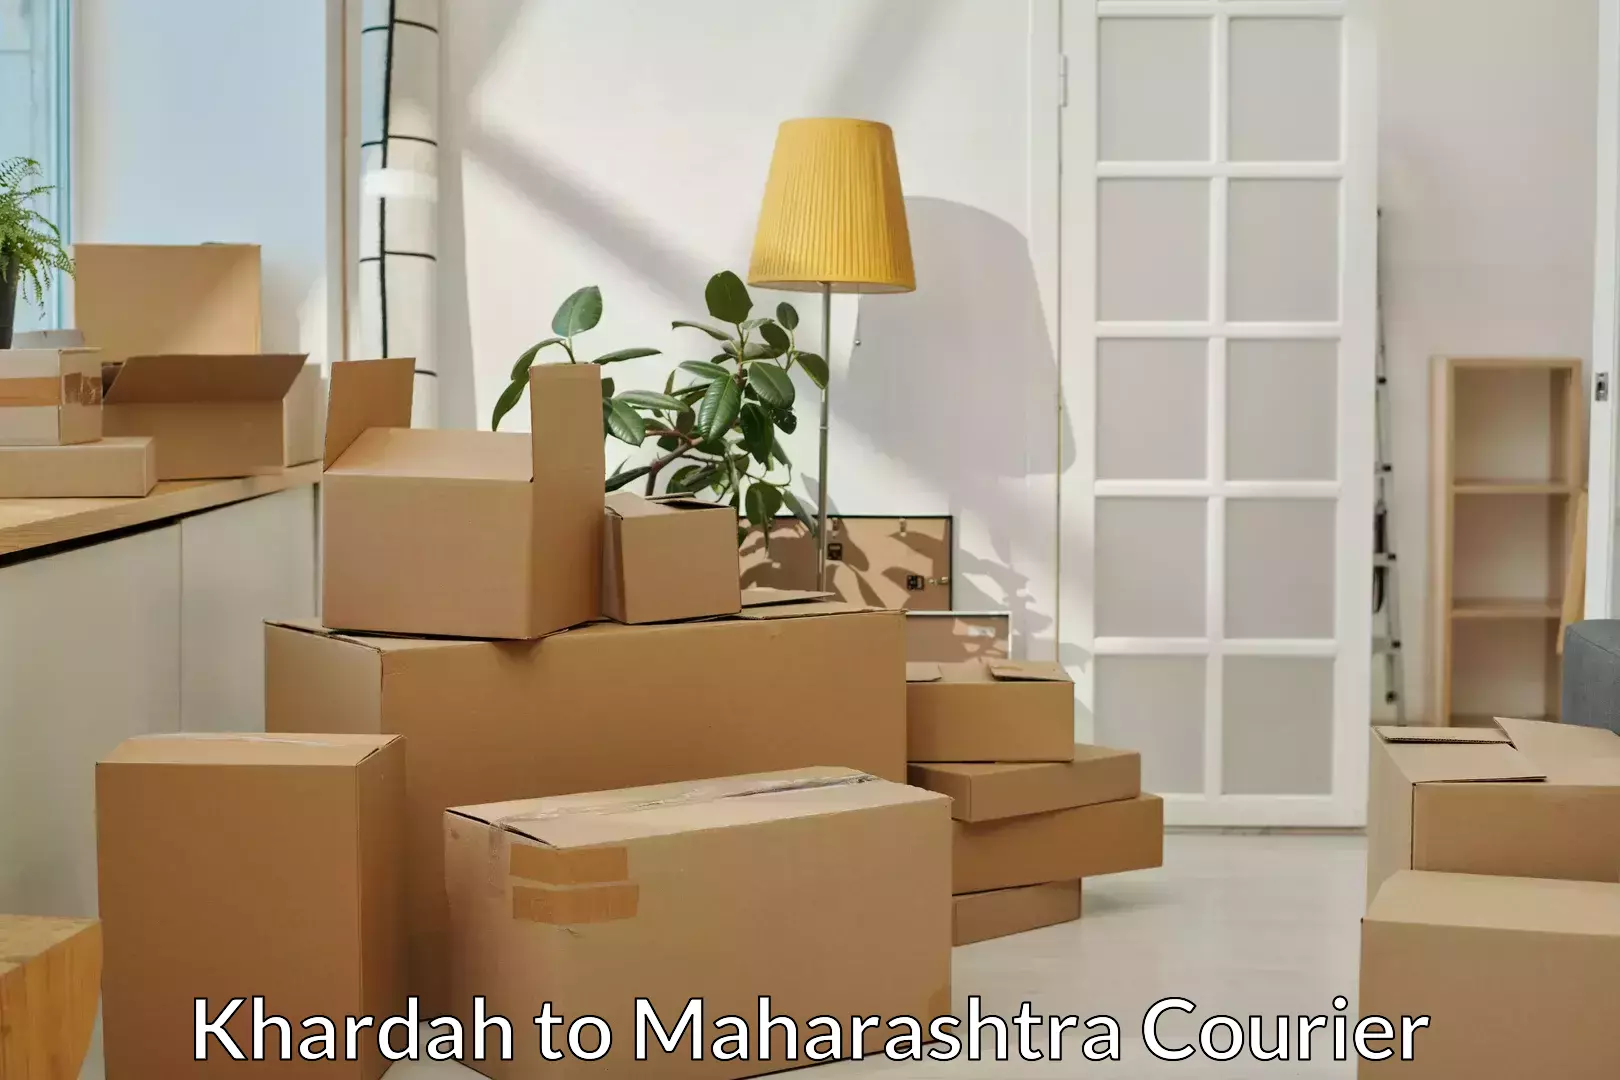 Full-service furniture transport Khardah to Aurangabad